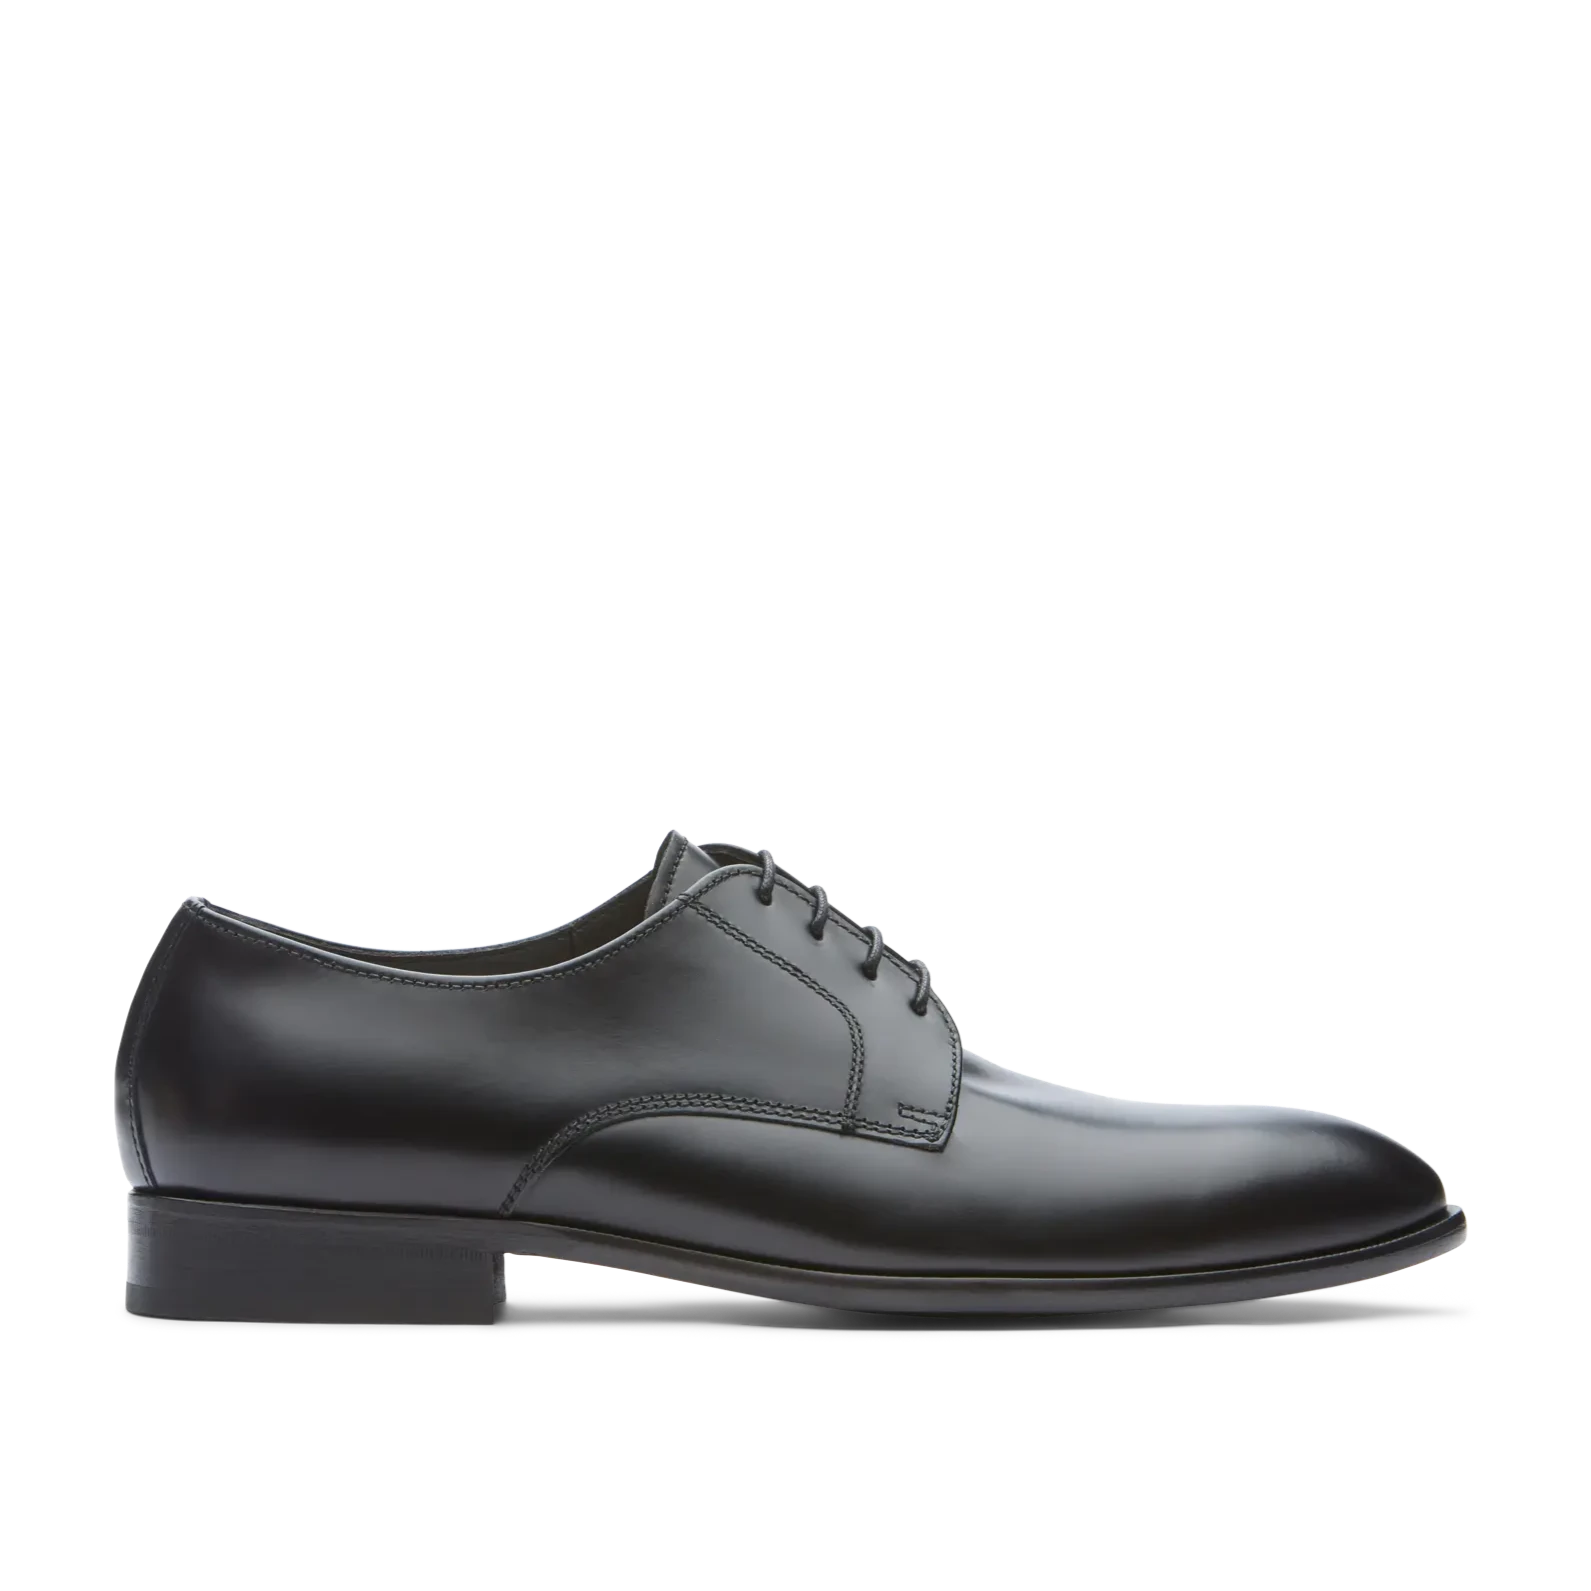 Zapatos Oxford De La Marca Lottusse Para Hombre Modelo Regent Derbys De Vacuno SemibrillanteEn Color Negro